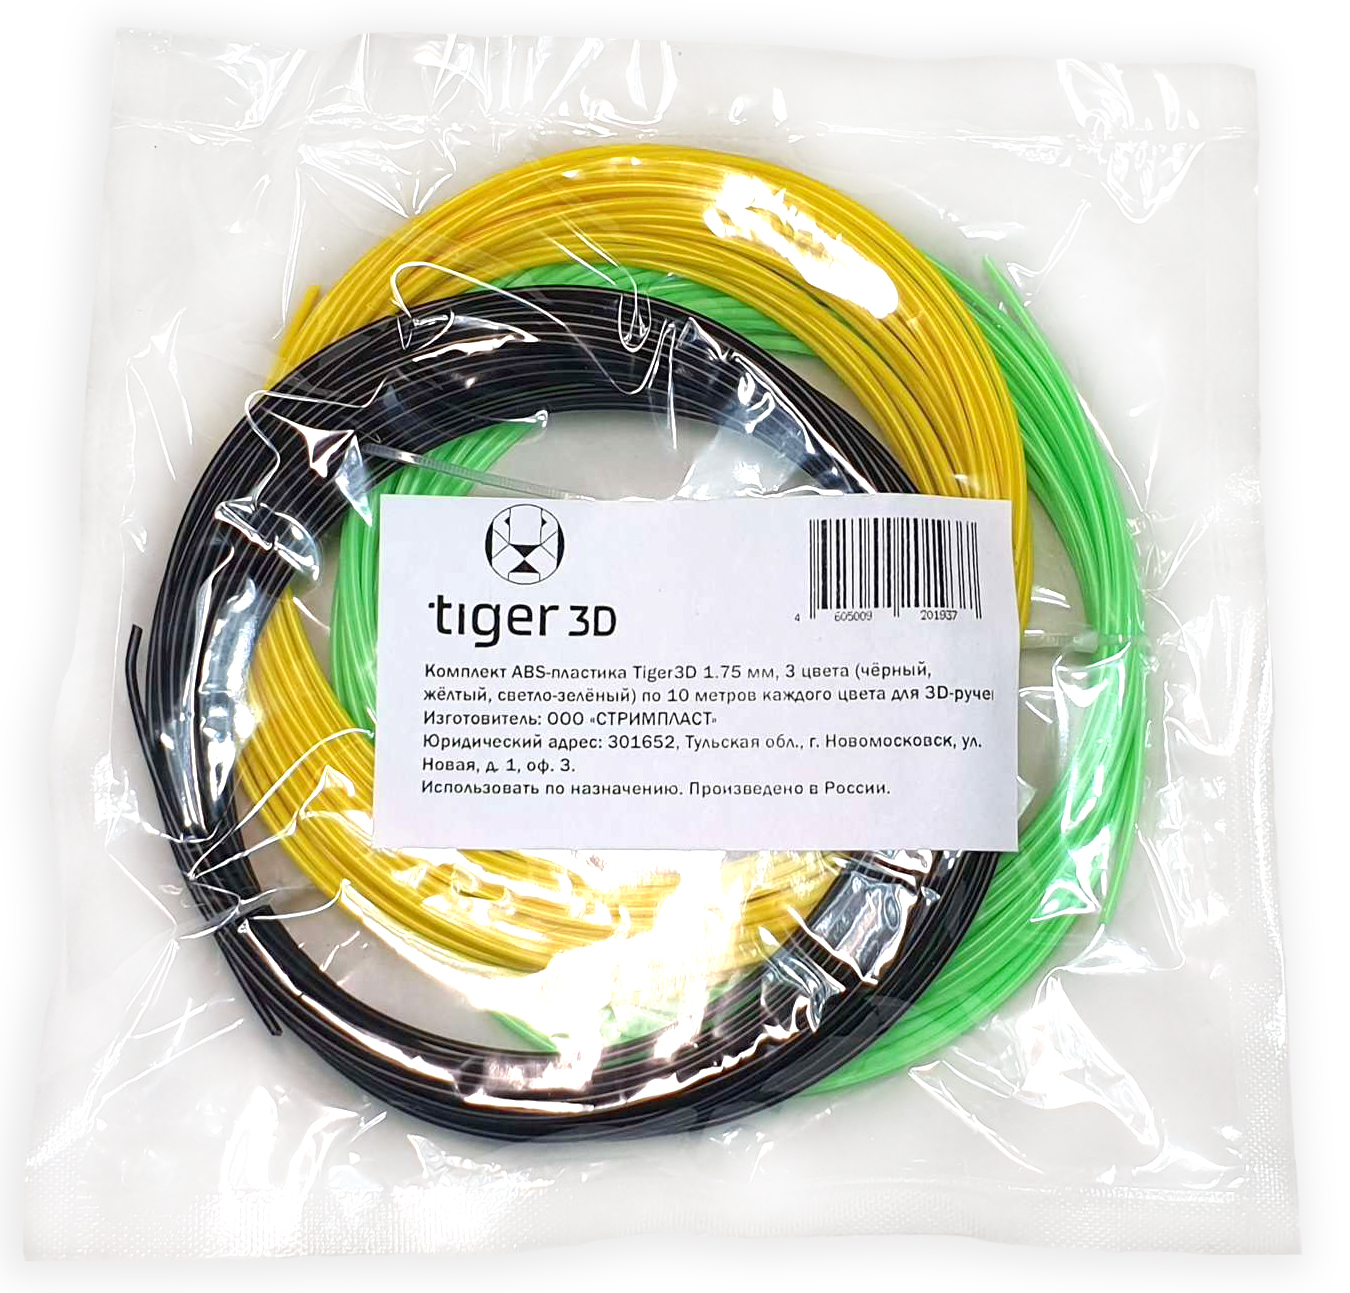 Комплект ABS-пластика Tiger3D 1.75 мм. для 3D ручек (черный, желтый, светло-зеленый), по 10 м каждого цвета